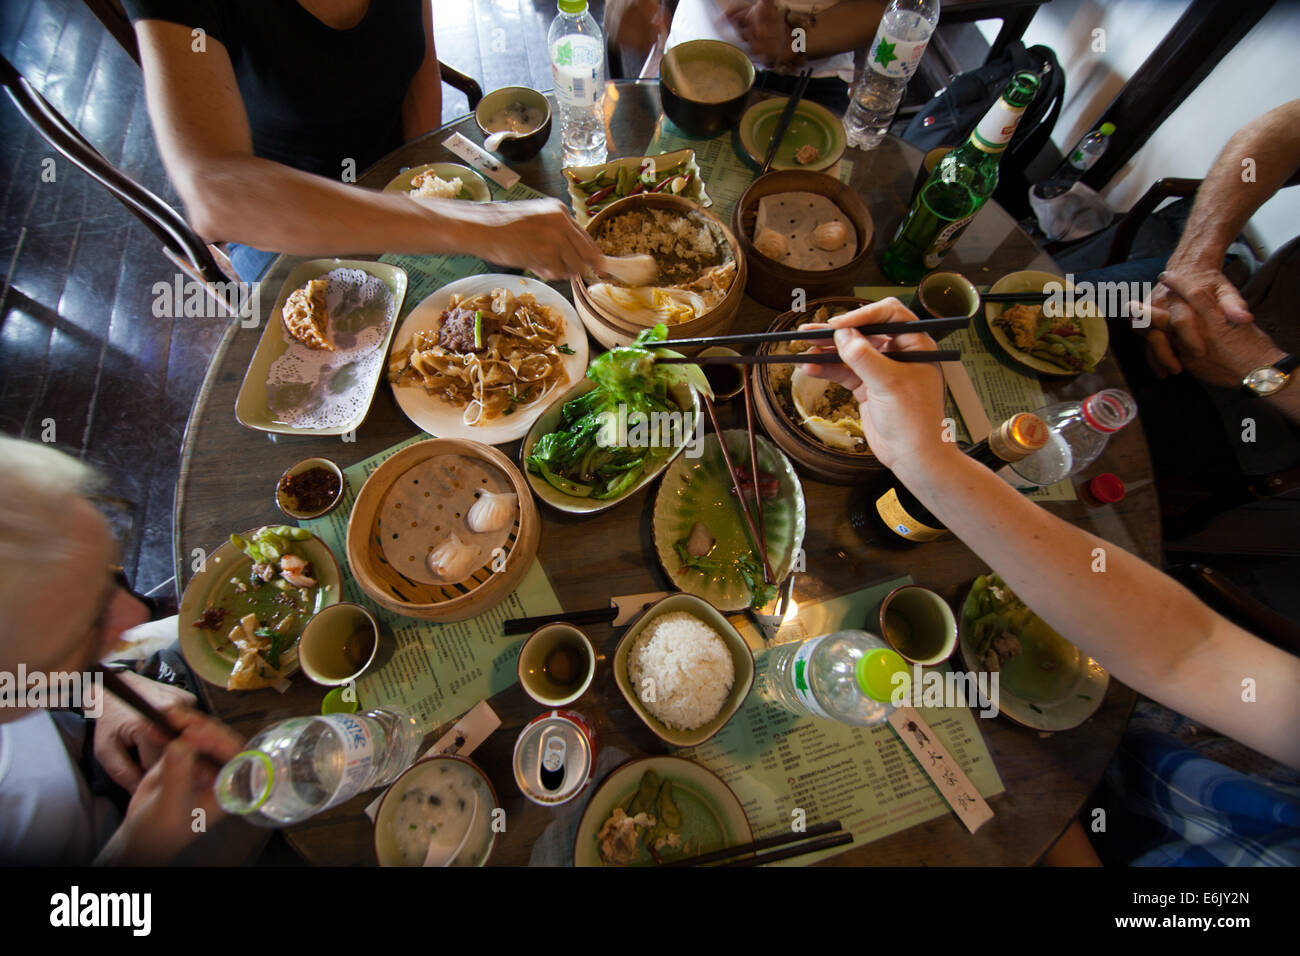 Un repas typiquement chinois se compose de nombreux petits plats à la table partagée par tous à l'aide de baguettes. Banque D'Images